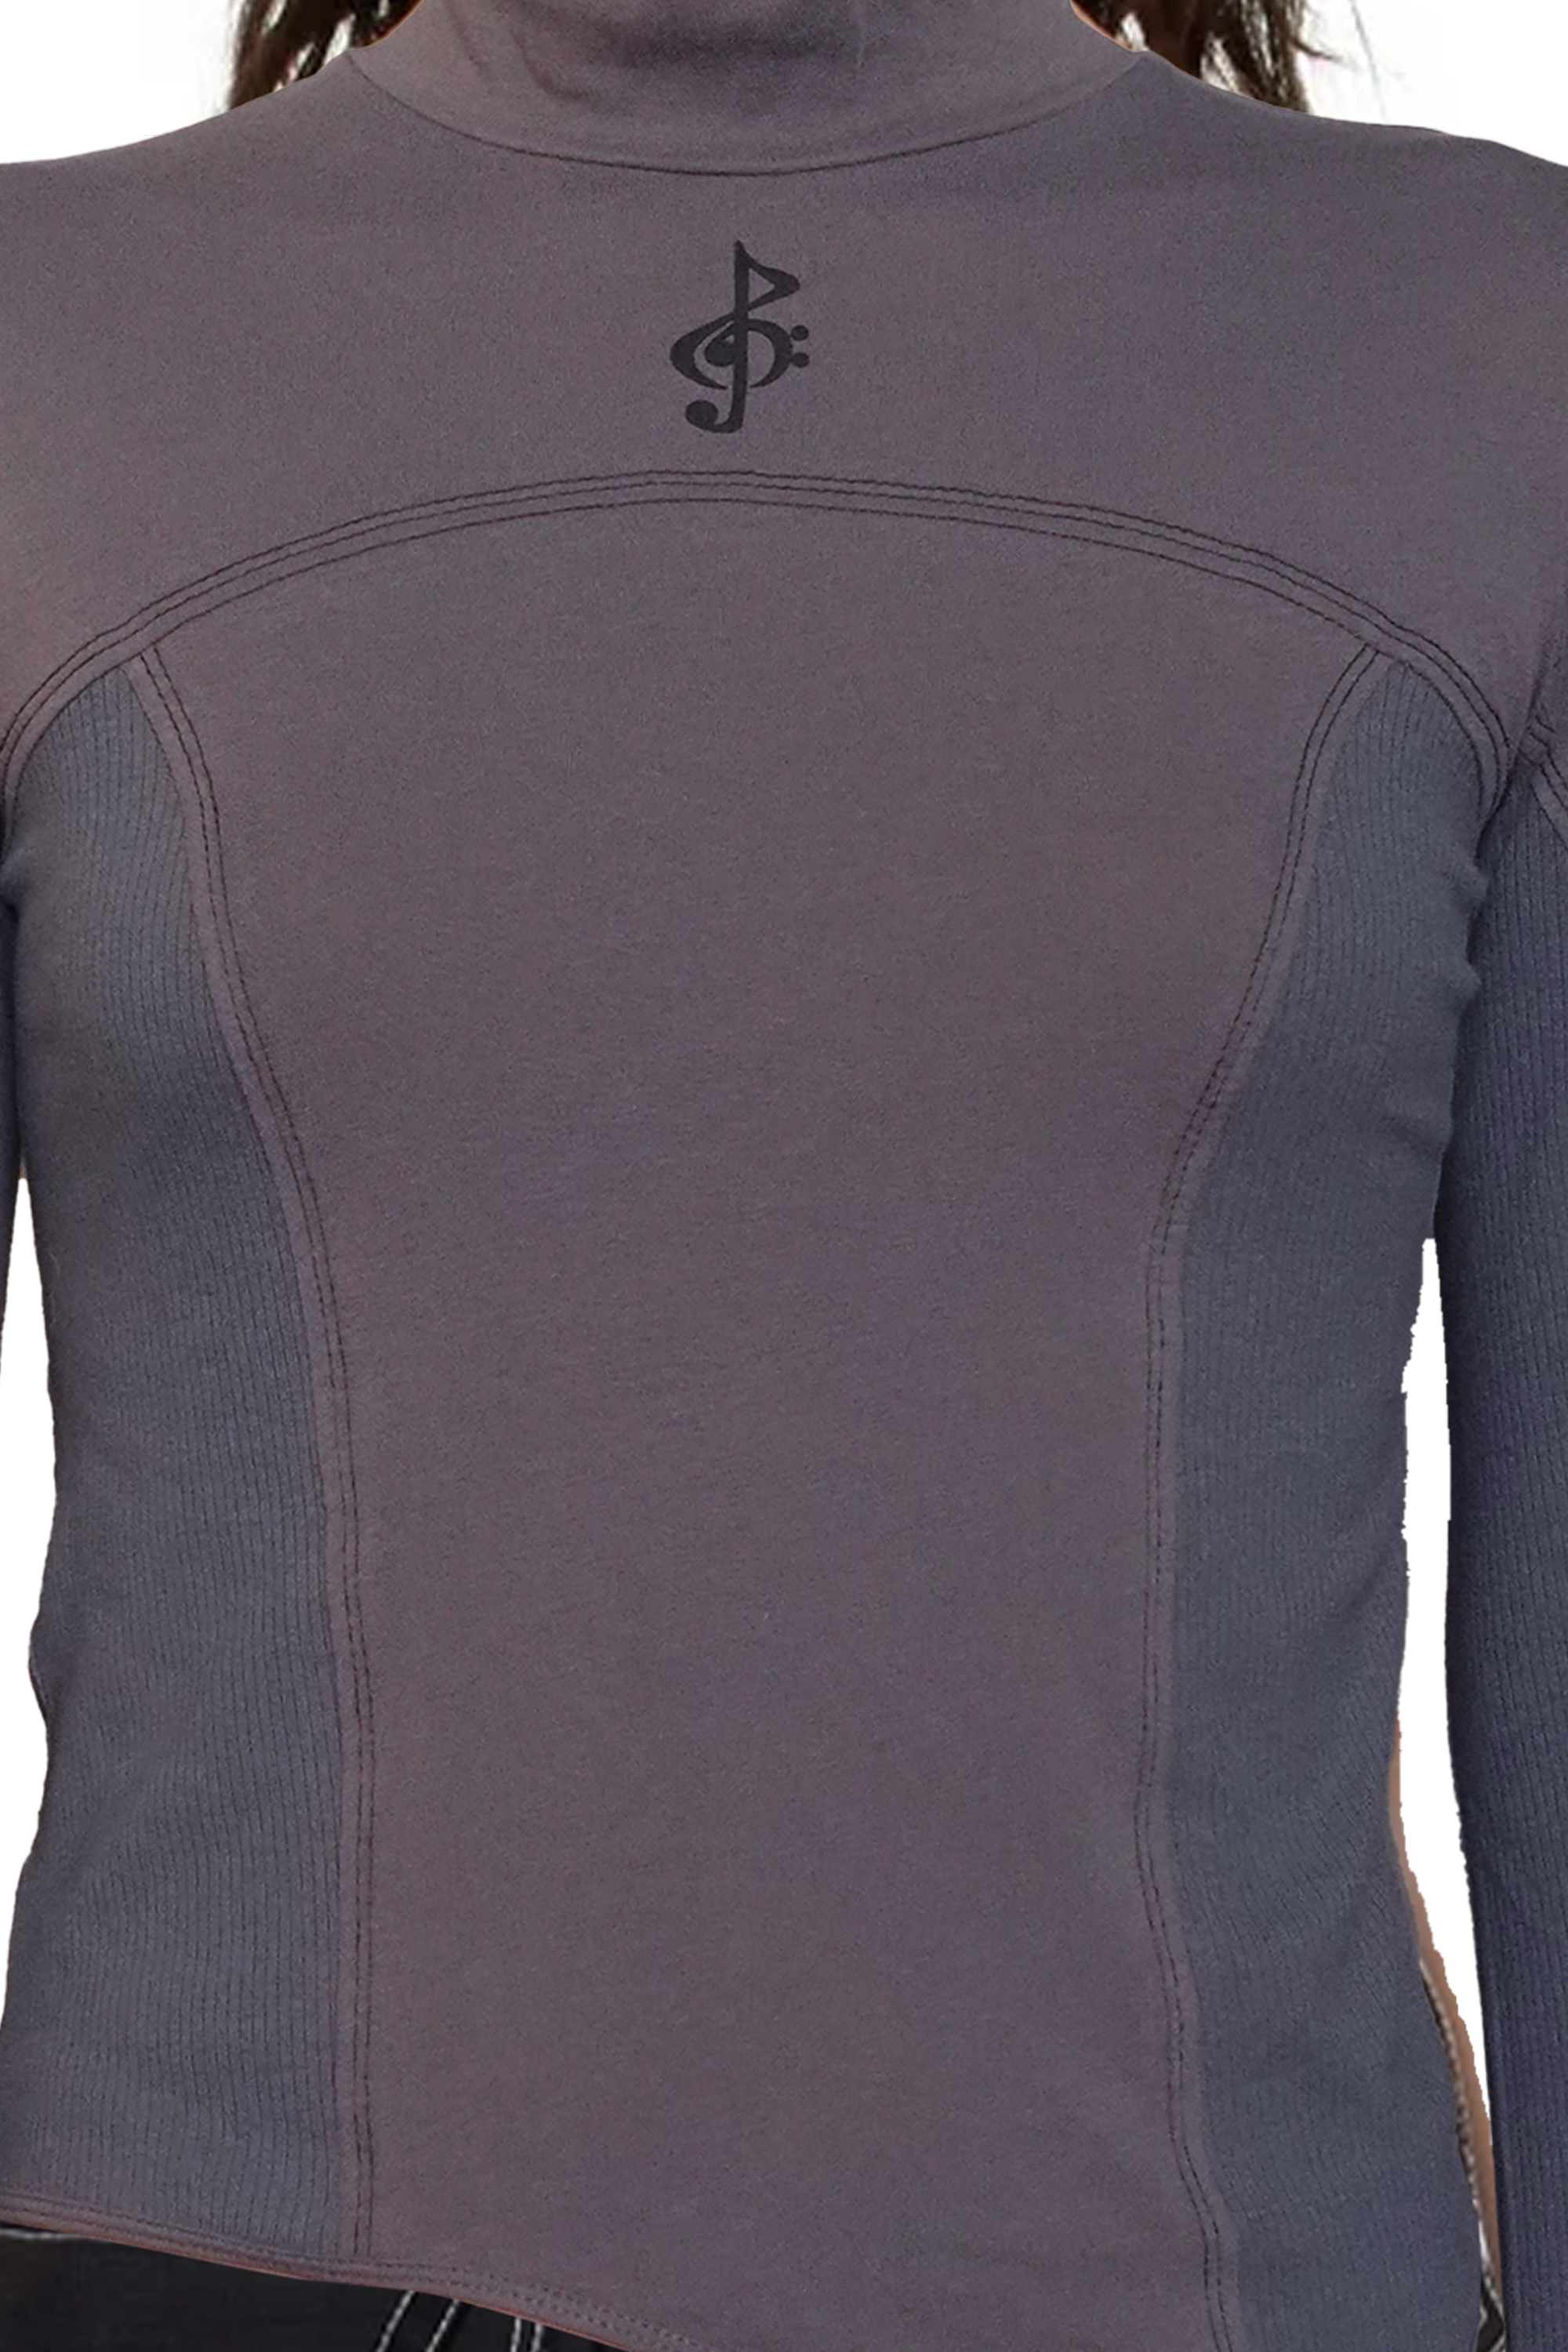 Ep.6 Long sleeve unbalanced cut Dark grey top No.16